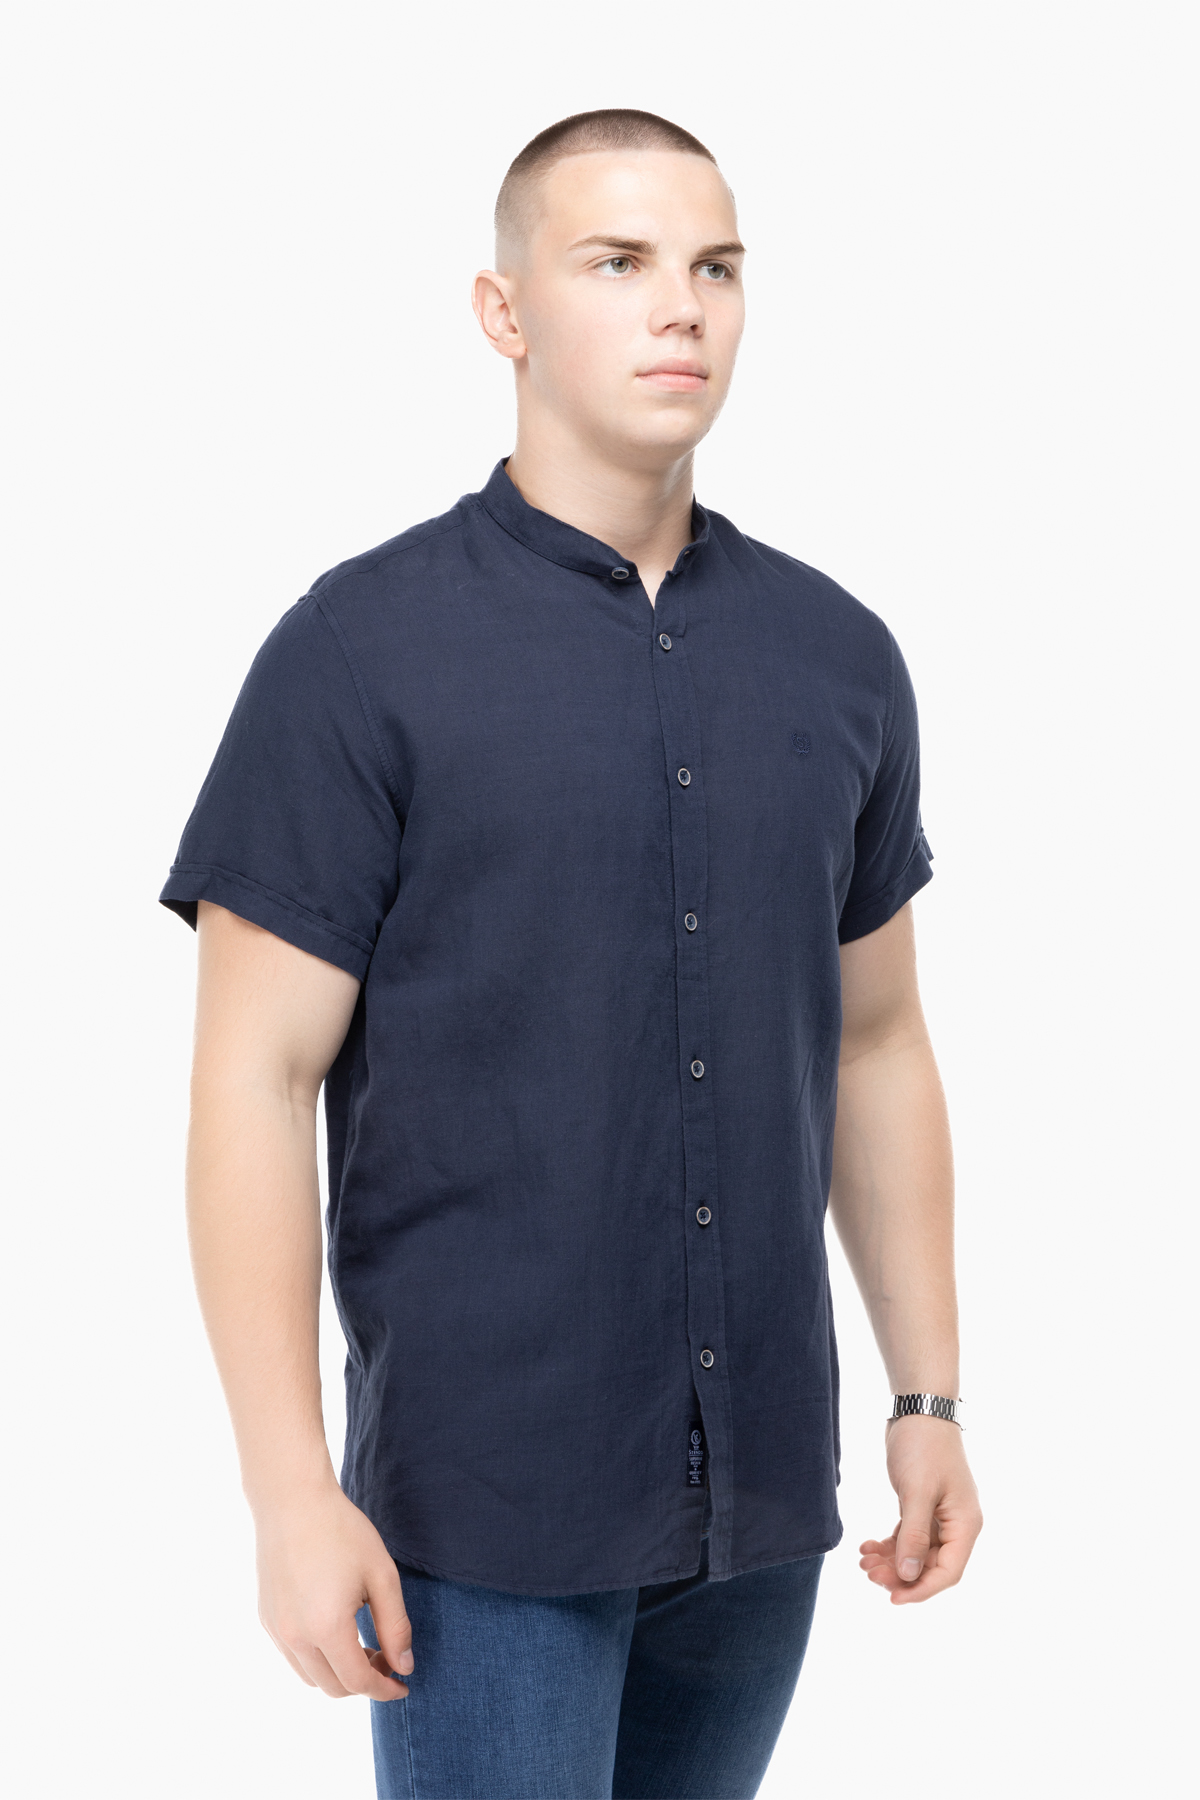 Рубашка классическая однотонная мужская Stendo 14212 2XL Темно-синий (2000989627463)